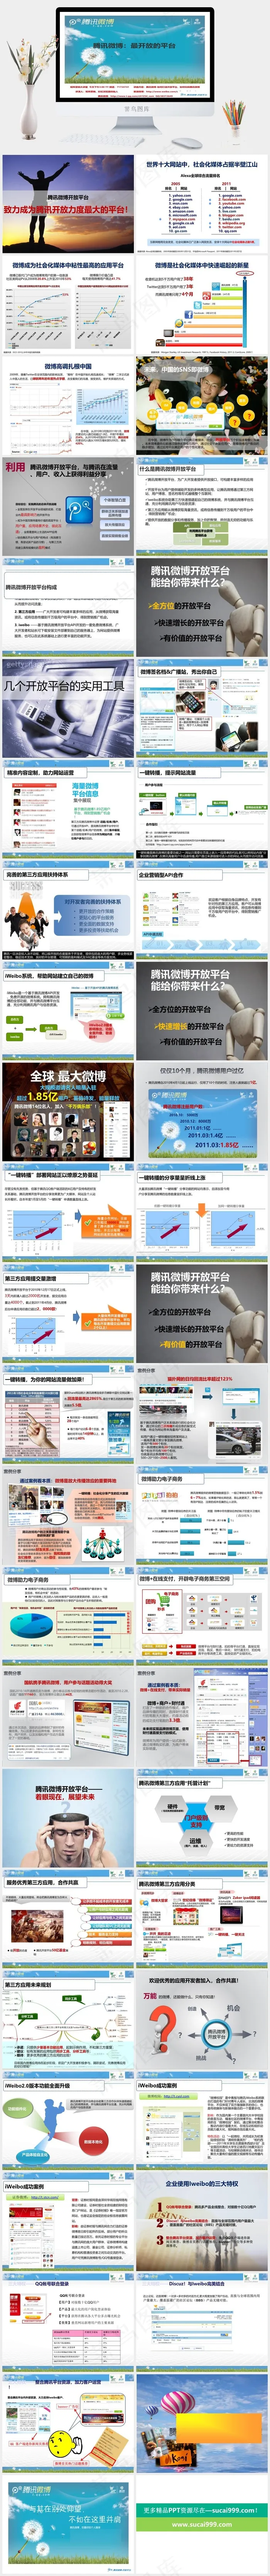 腾讯微博解析最开放的平台图片营销青色实景风PPT模板青色实景风PPT模板